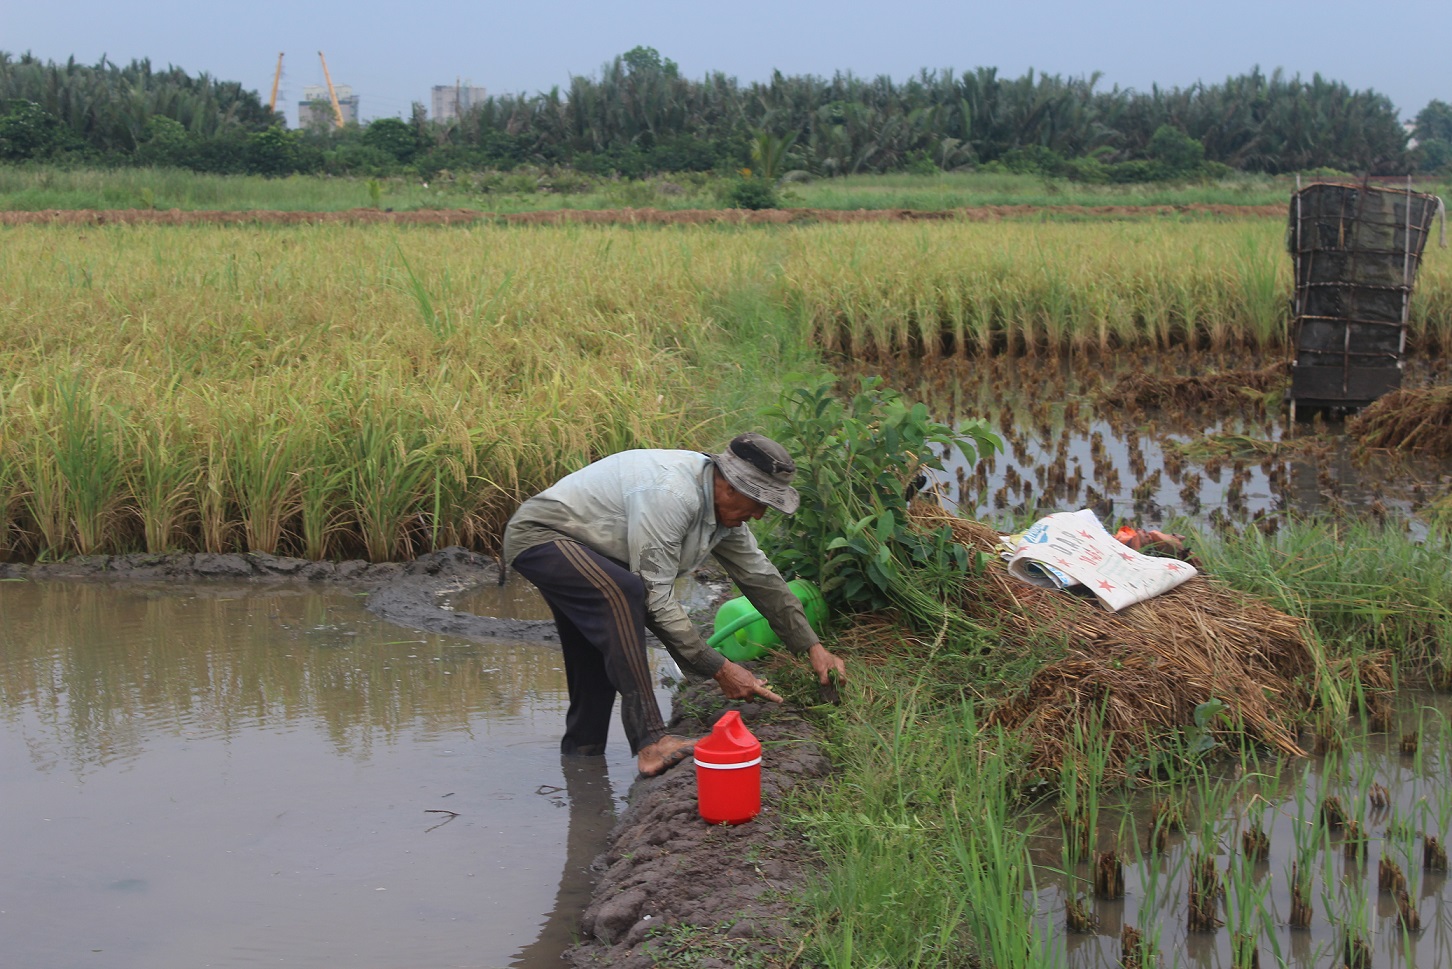 Với địa thế là bán đảo, bao quanh bởi Sông Sài Gòn nên đất nơi đây màu mỡ. Để không lãng phí đất, người dân nơi đây trồng lúa để sinh sống. Cũng vì thế mà người dân nơi đây được ví là những người nông dân cuối cùng của TP.HCM.